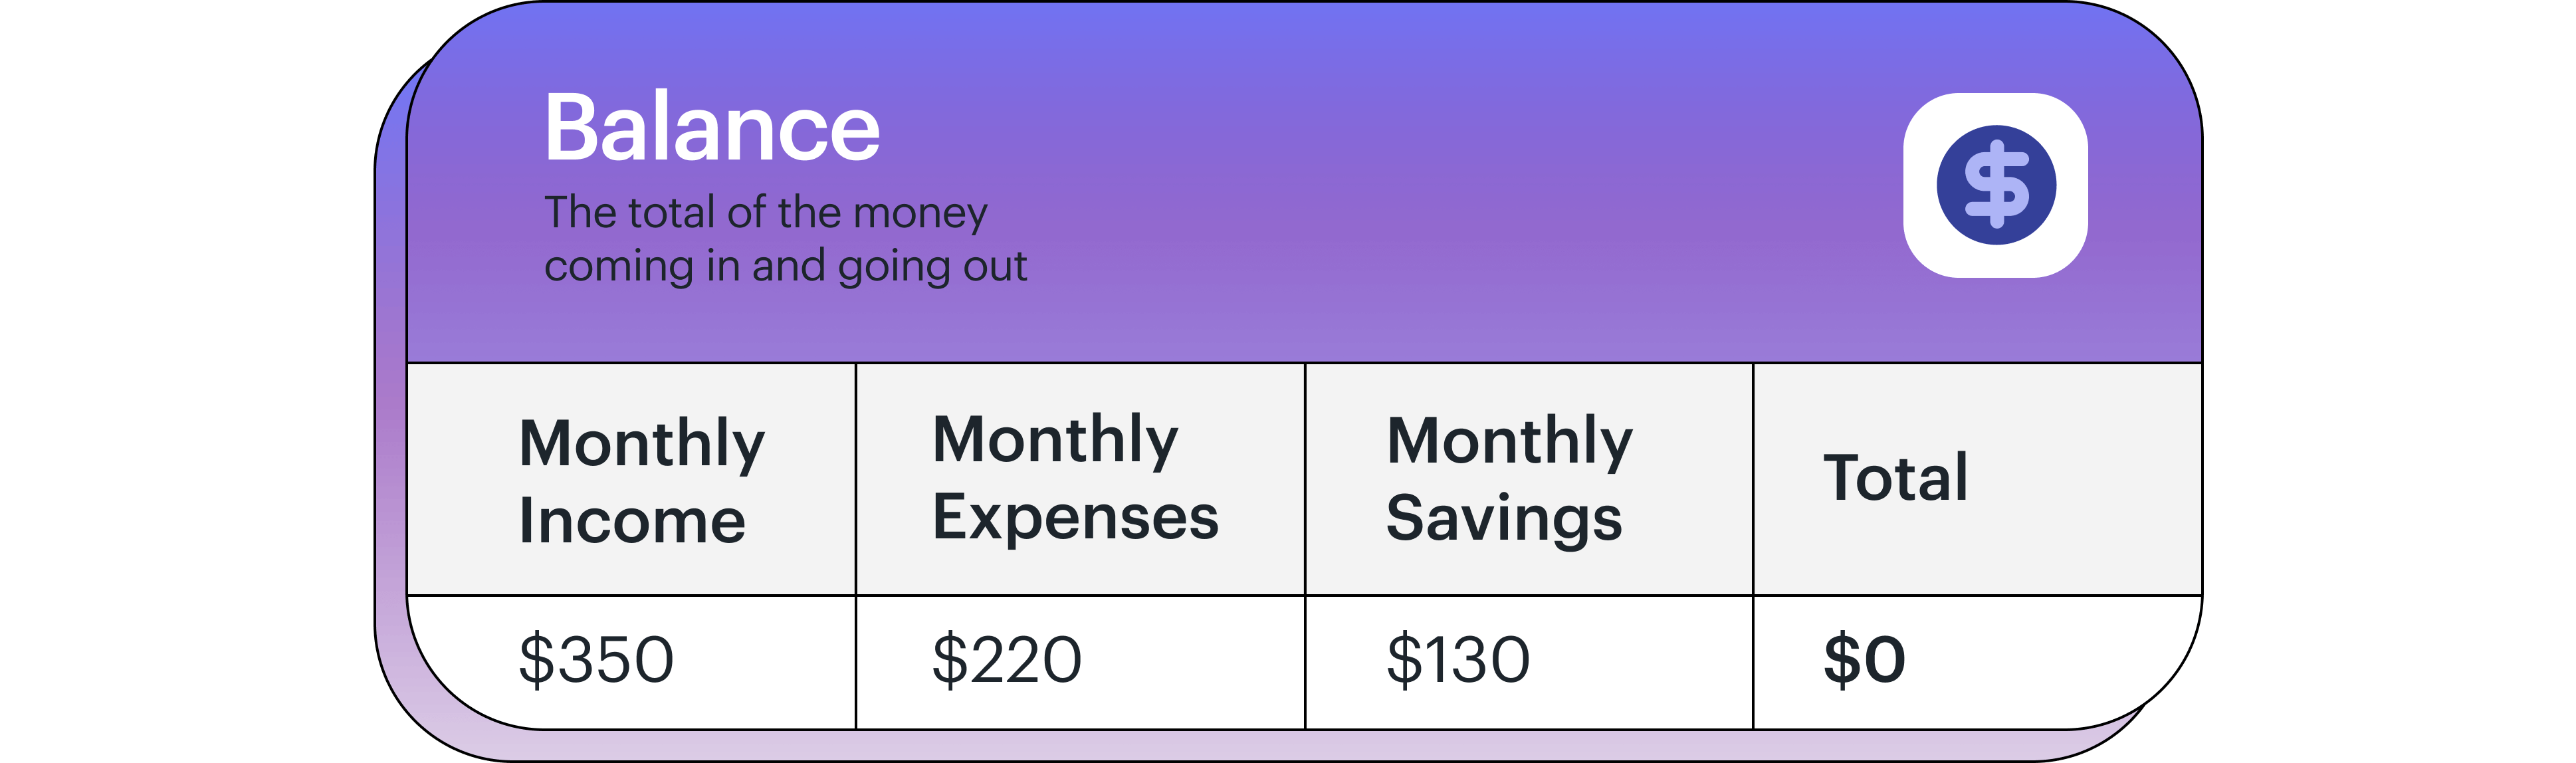 balance chart of income, expenses, savings